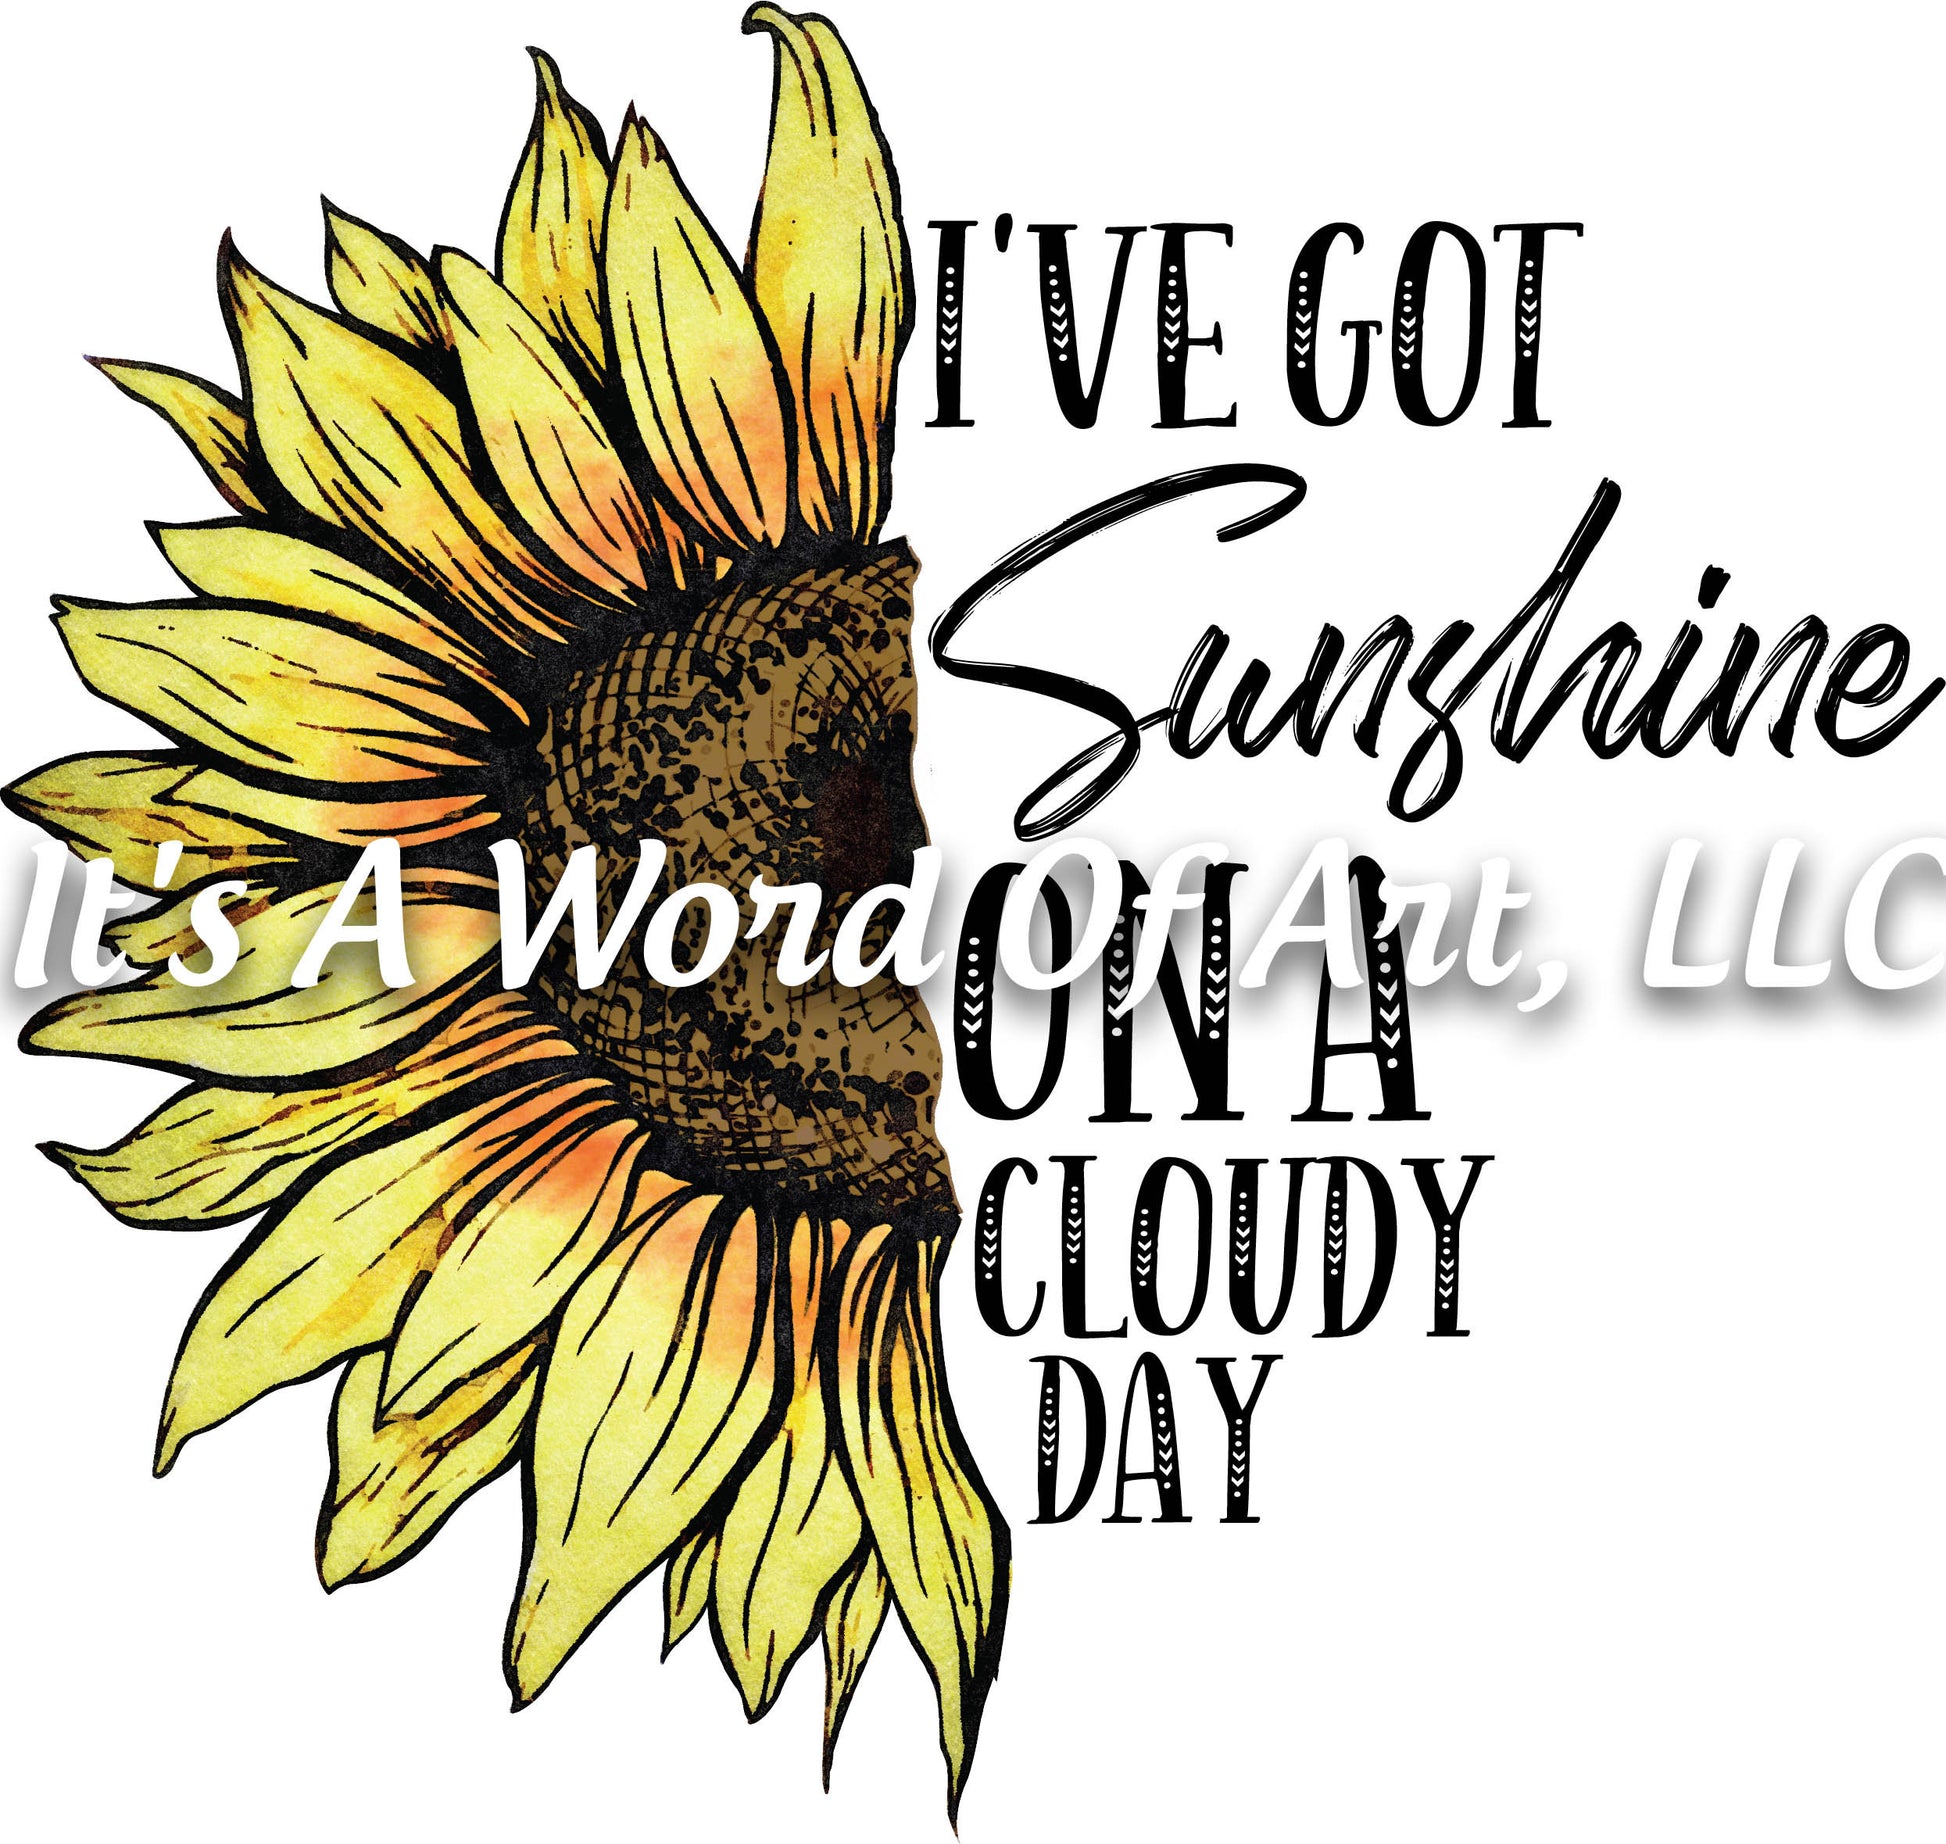 Sunflower 12 - I've got Sunshine on a Cloudy Day - Sublimation Transfer Set/Ready To Press Sublimation Transfer/Sublimation Transfer